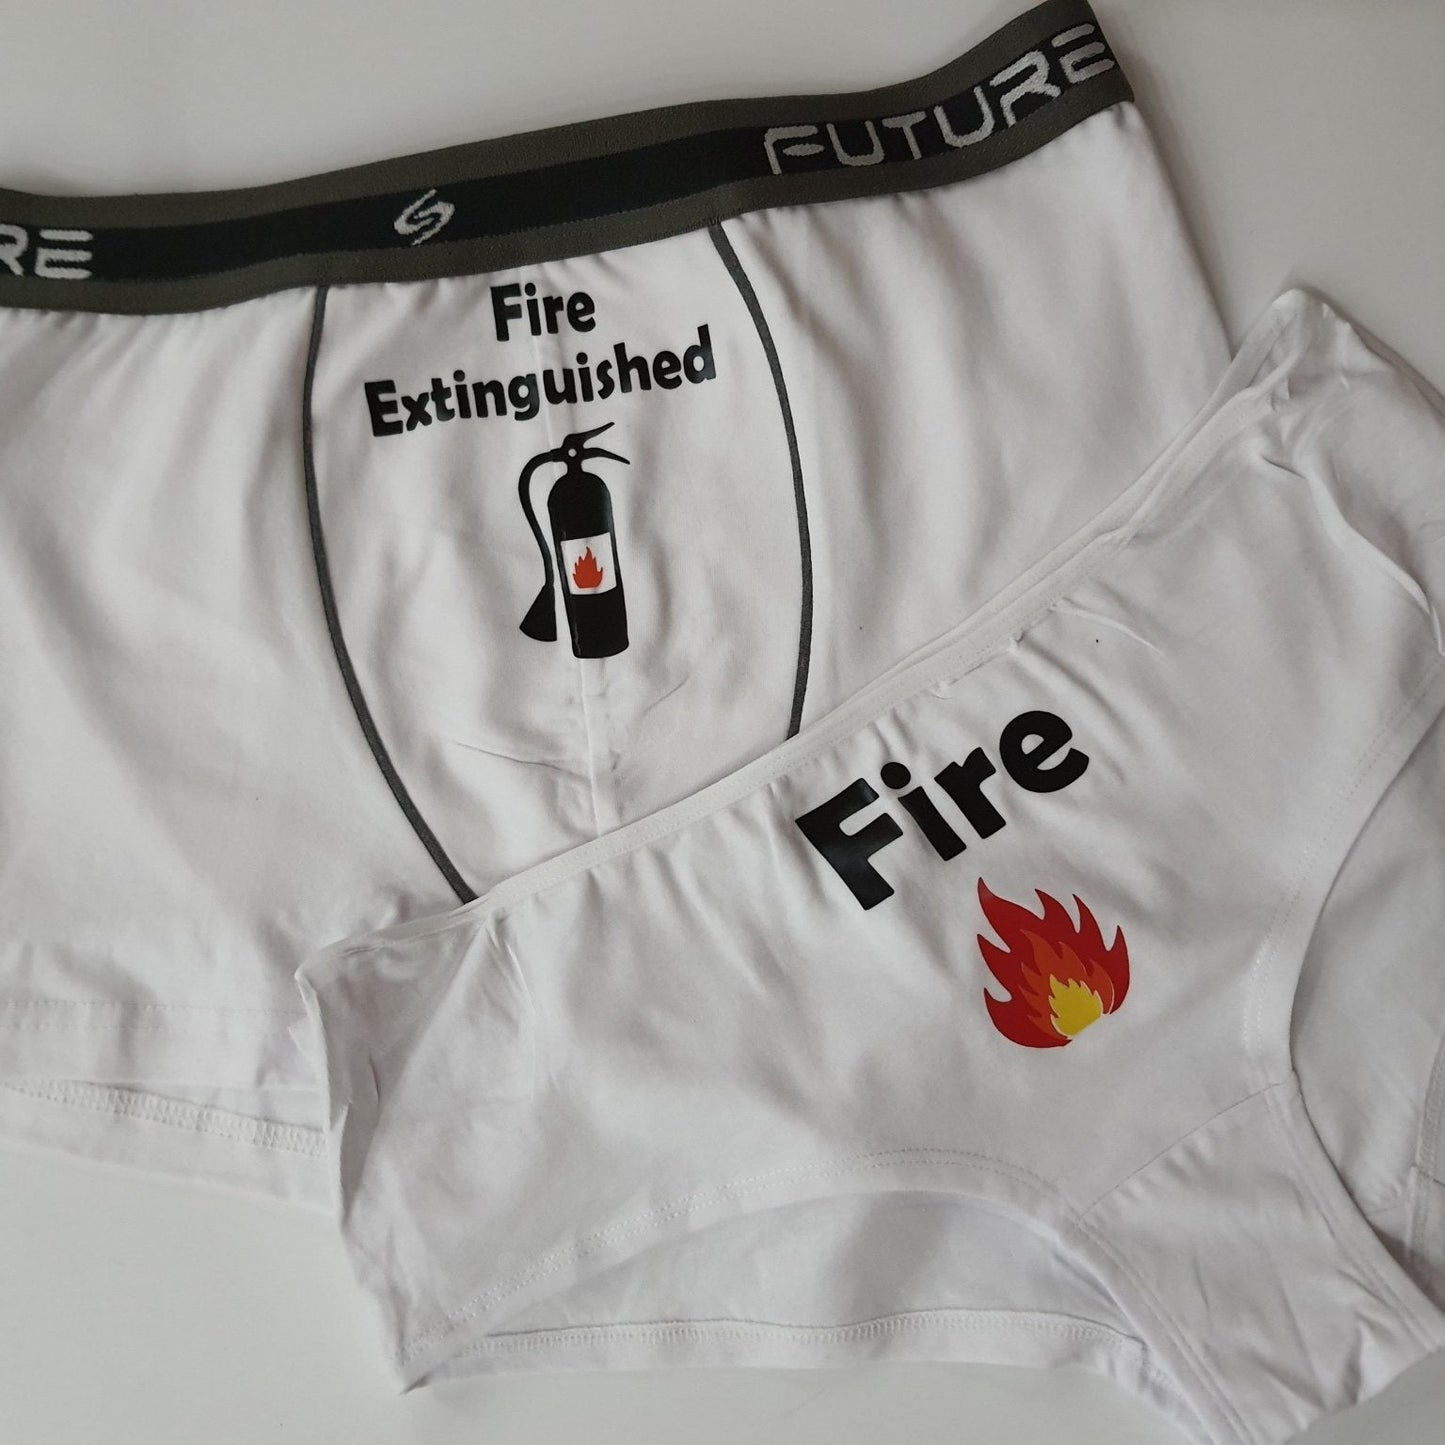 Couple underwear - Fire - Etba3lly